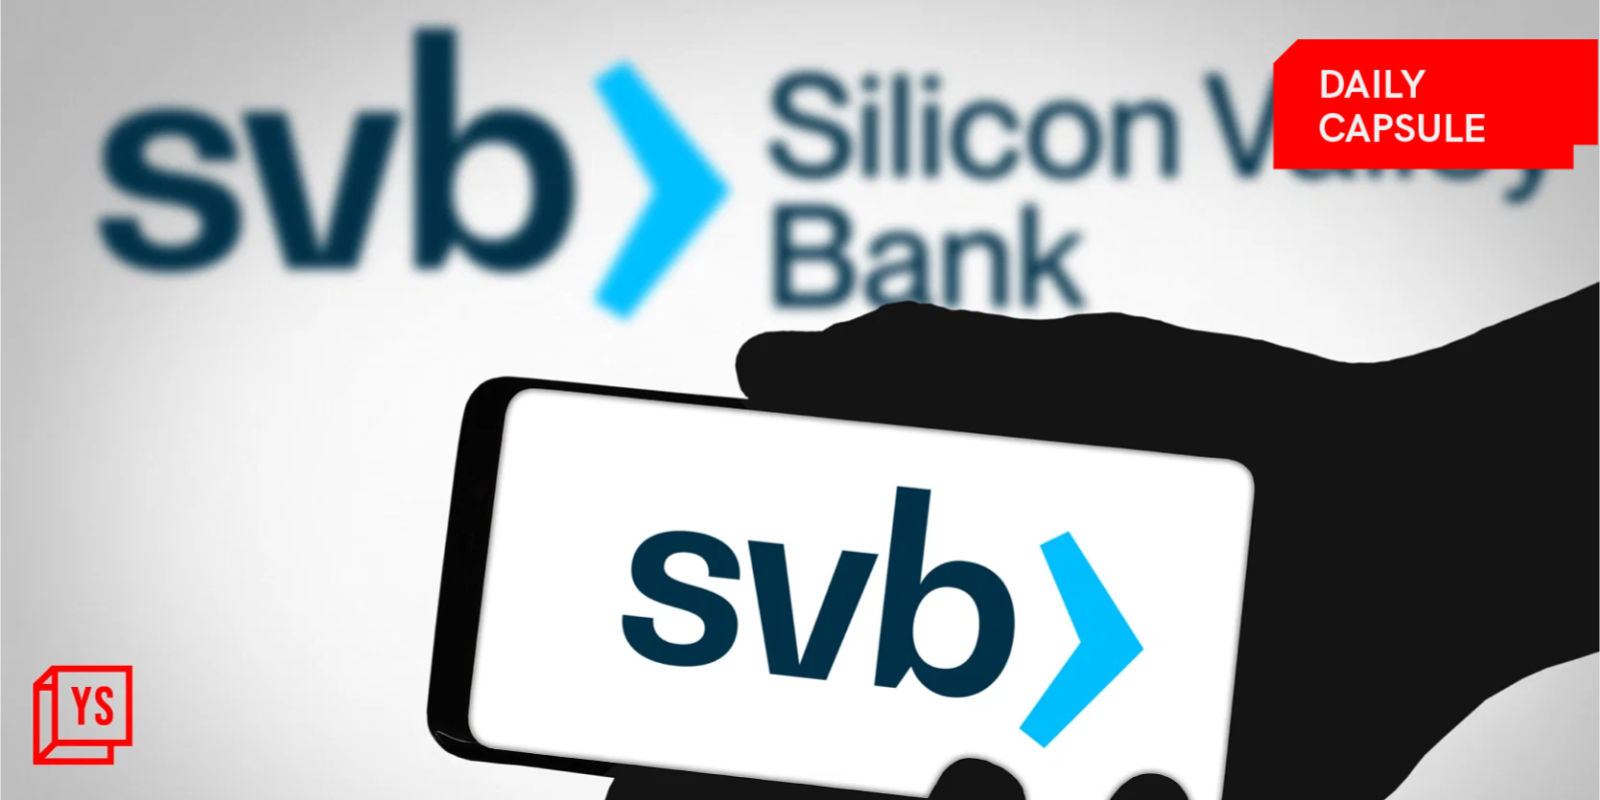 US regulators shut down SVB